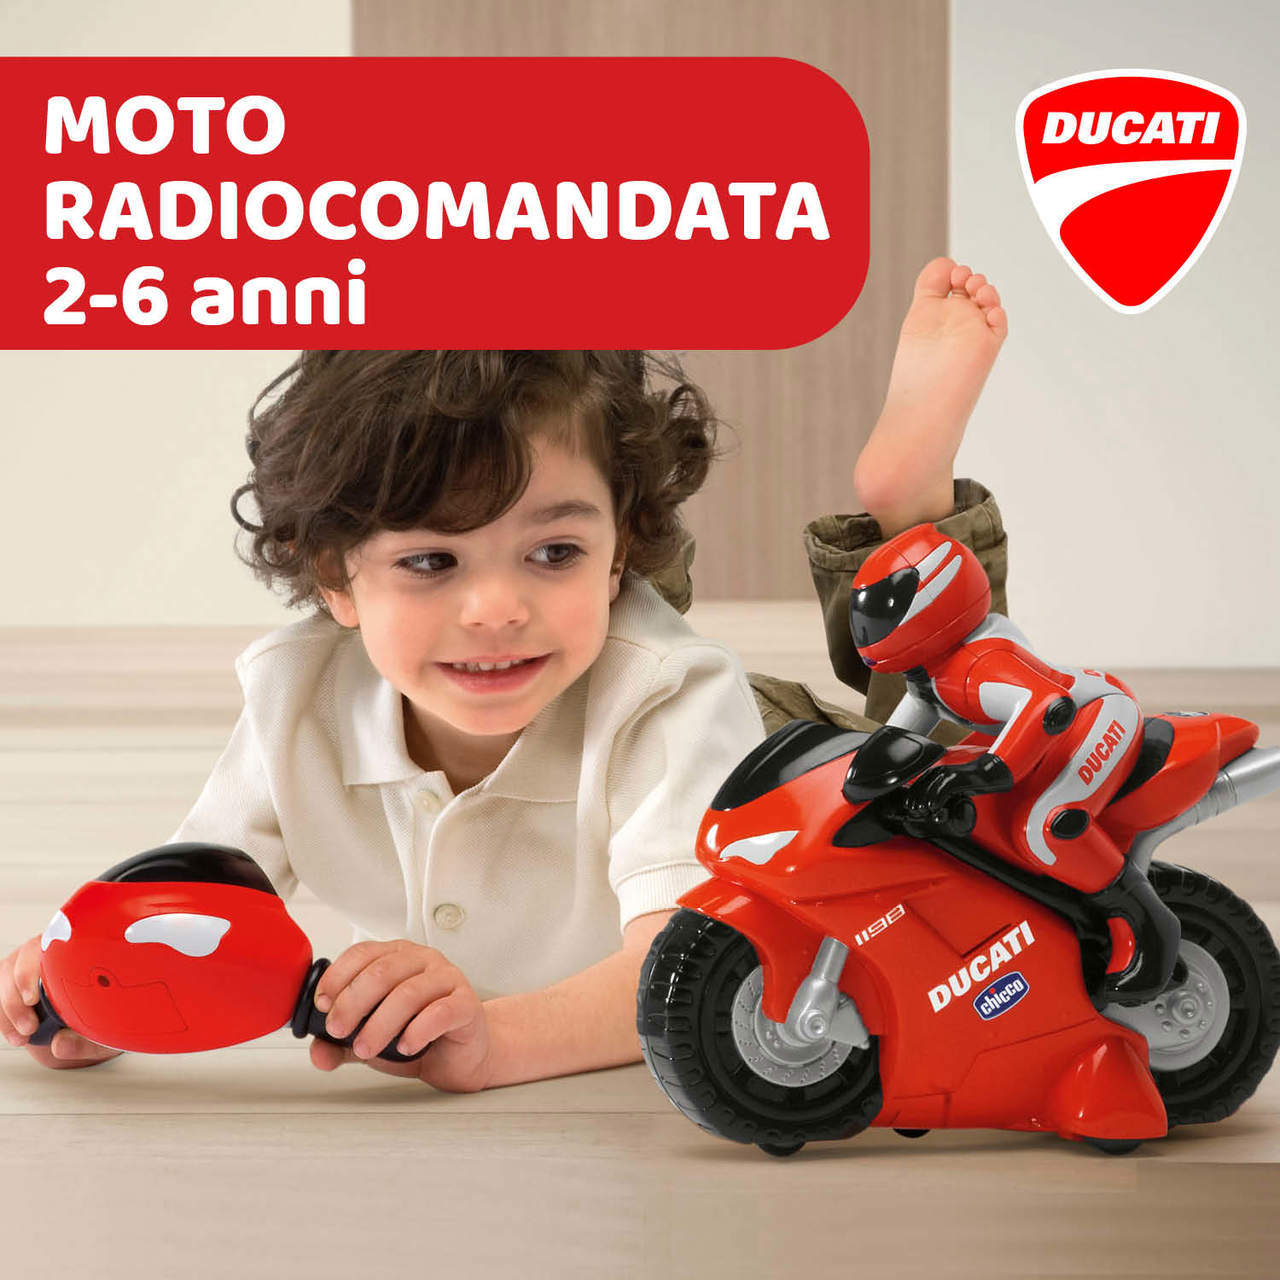 Ducati 1198 Radiocomandata image number 3